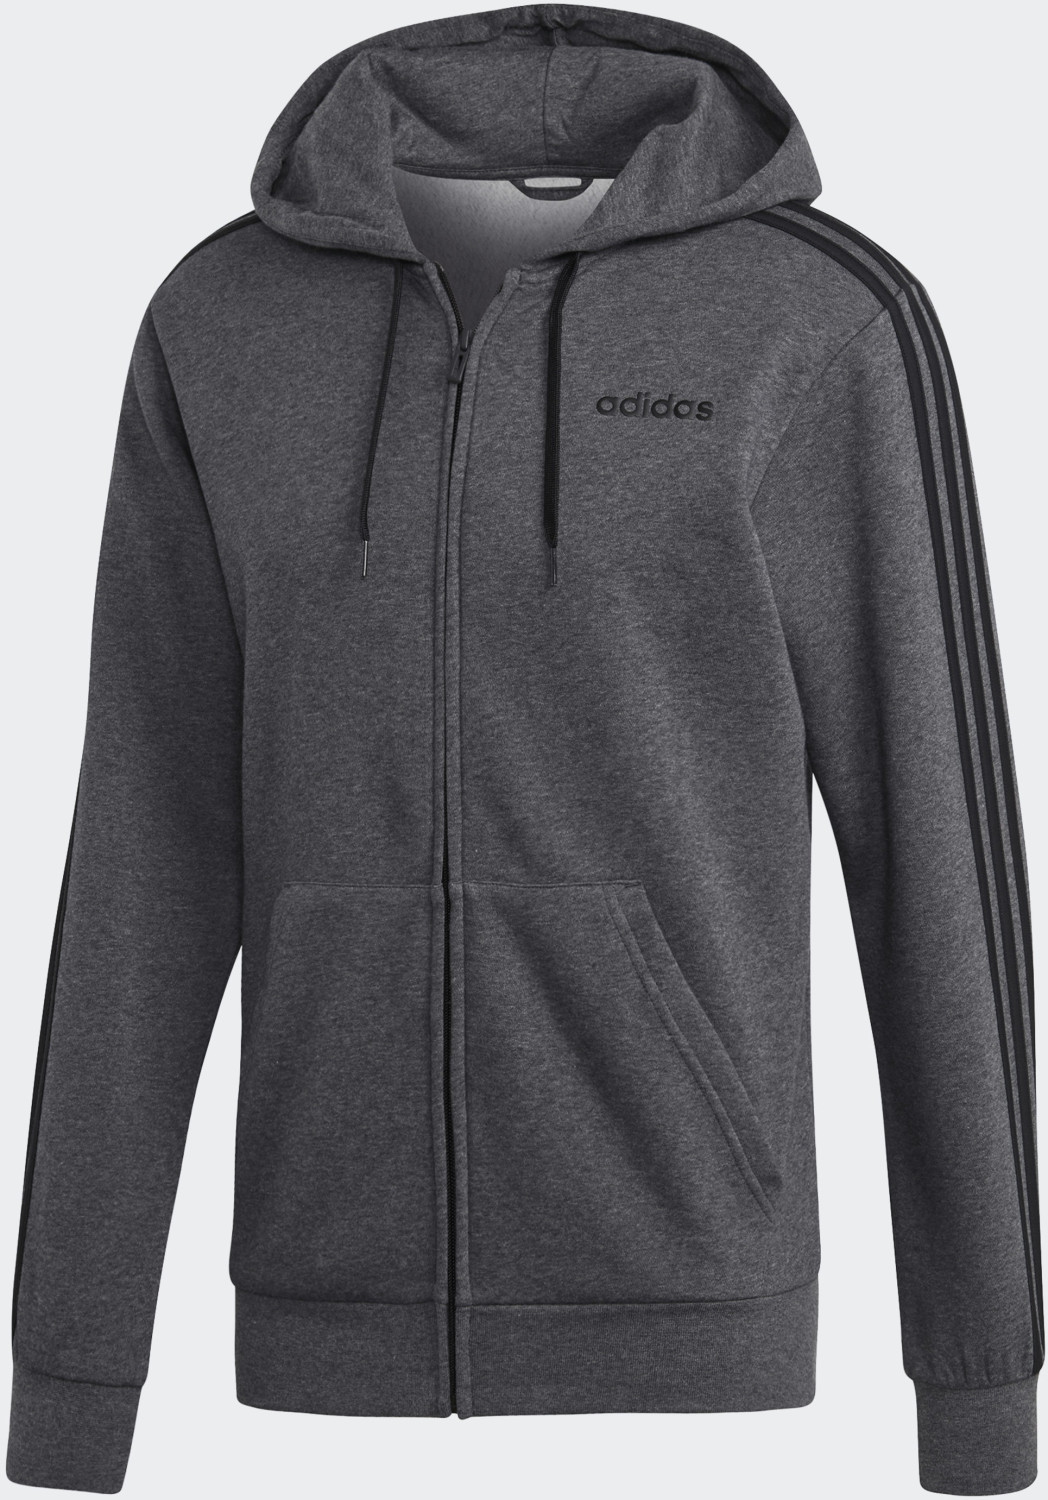 Adidas Essentials 3-Streifen Fleece Kapuzenjacke dark grey heather/black  (DX2528) ab 59,95 € | Preisvergleich bei | Sweatshirts